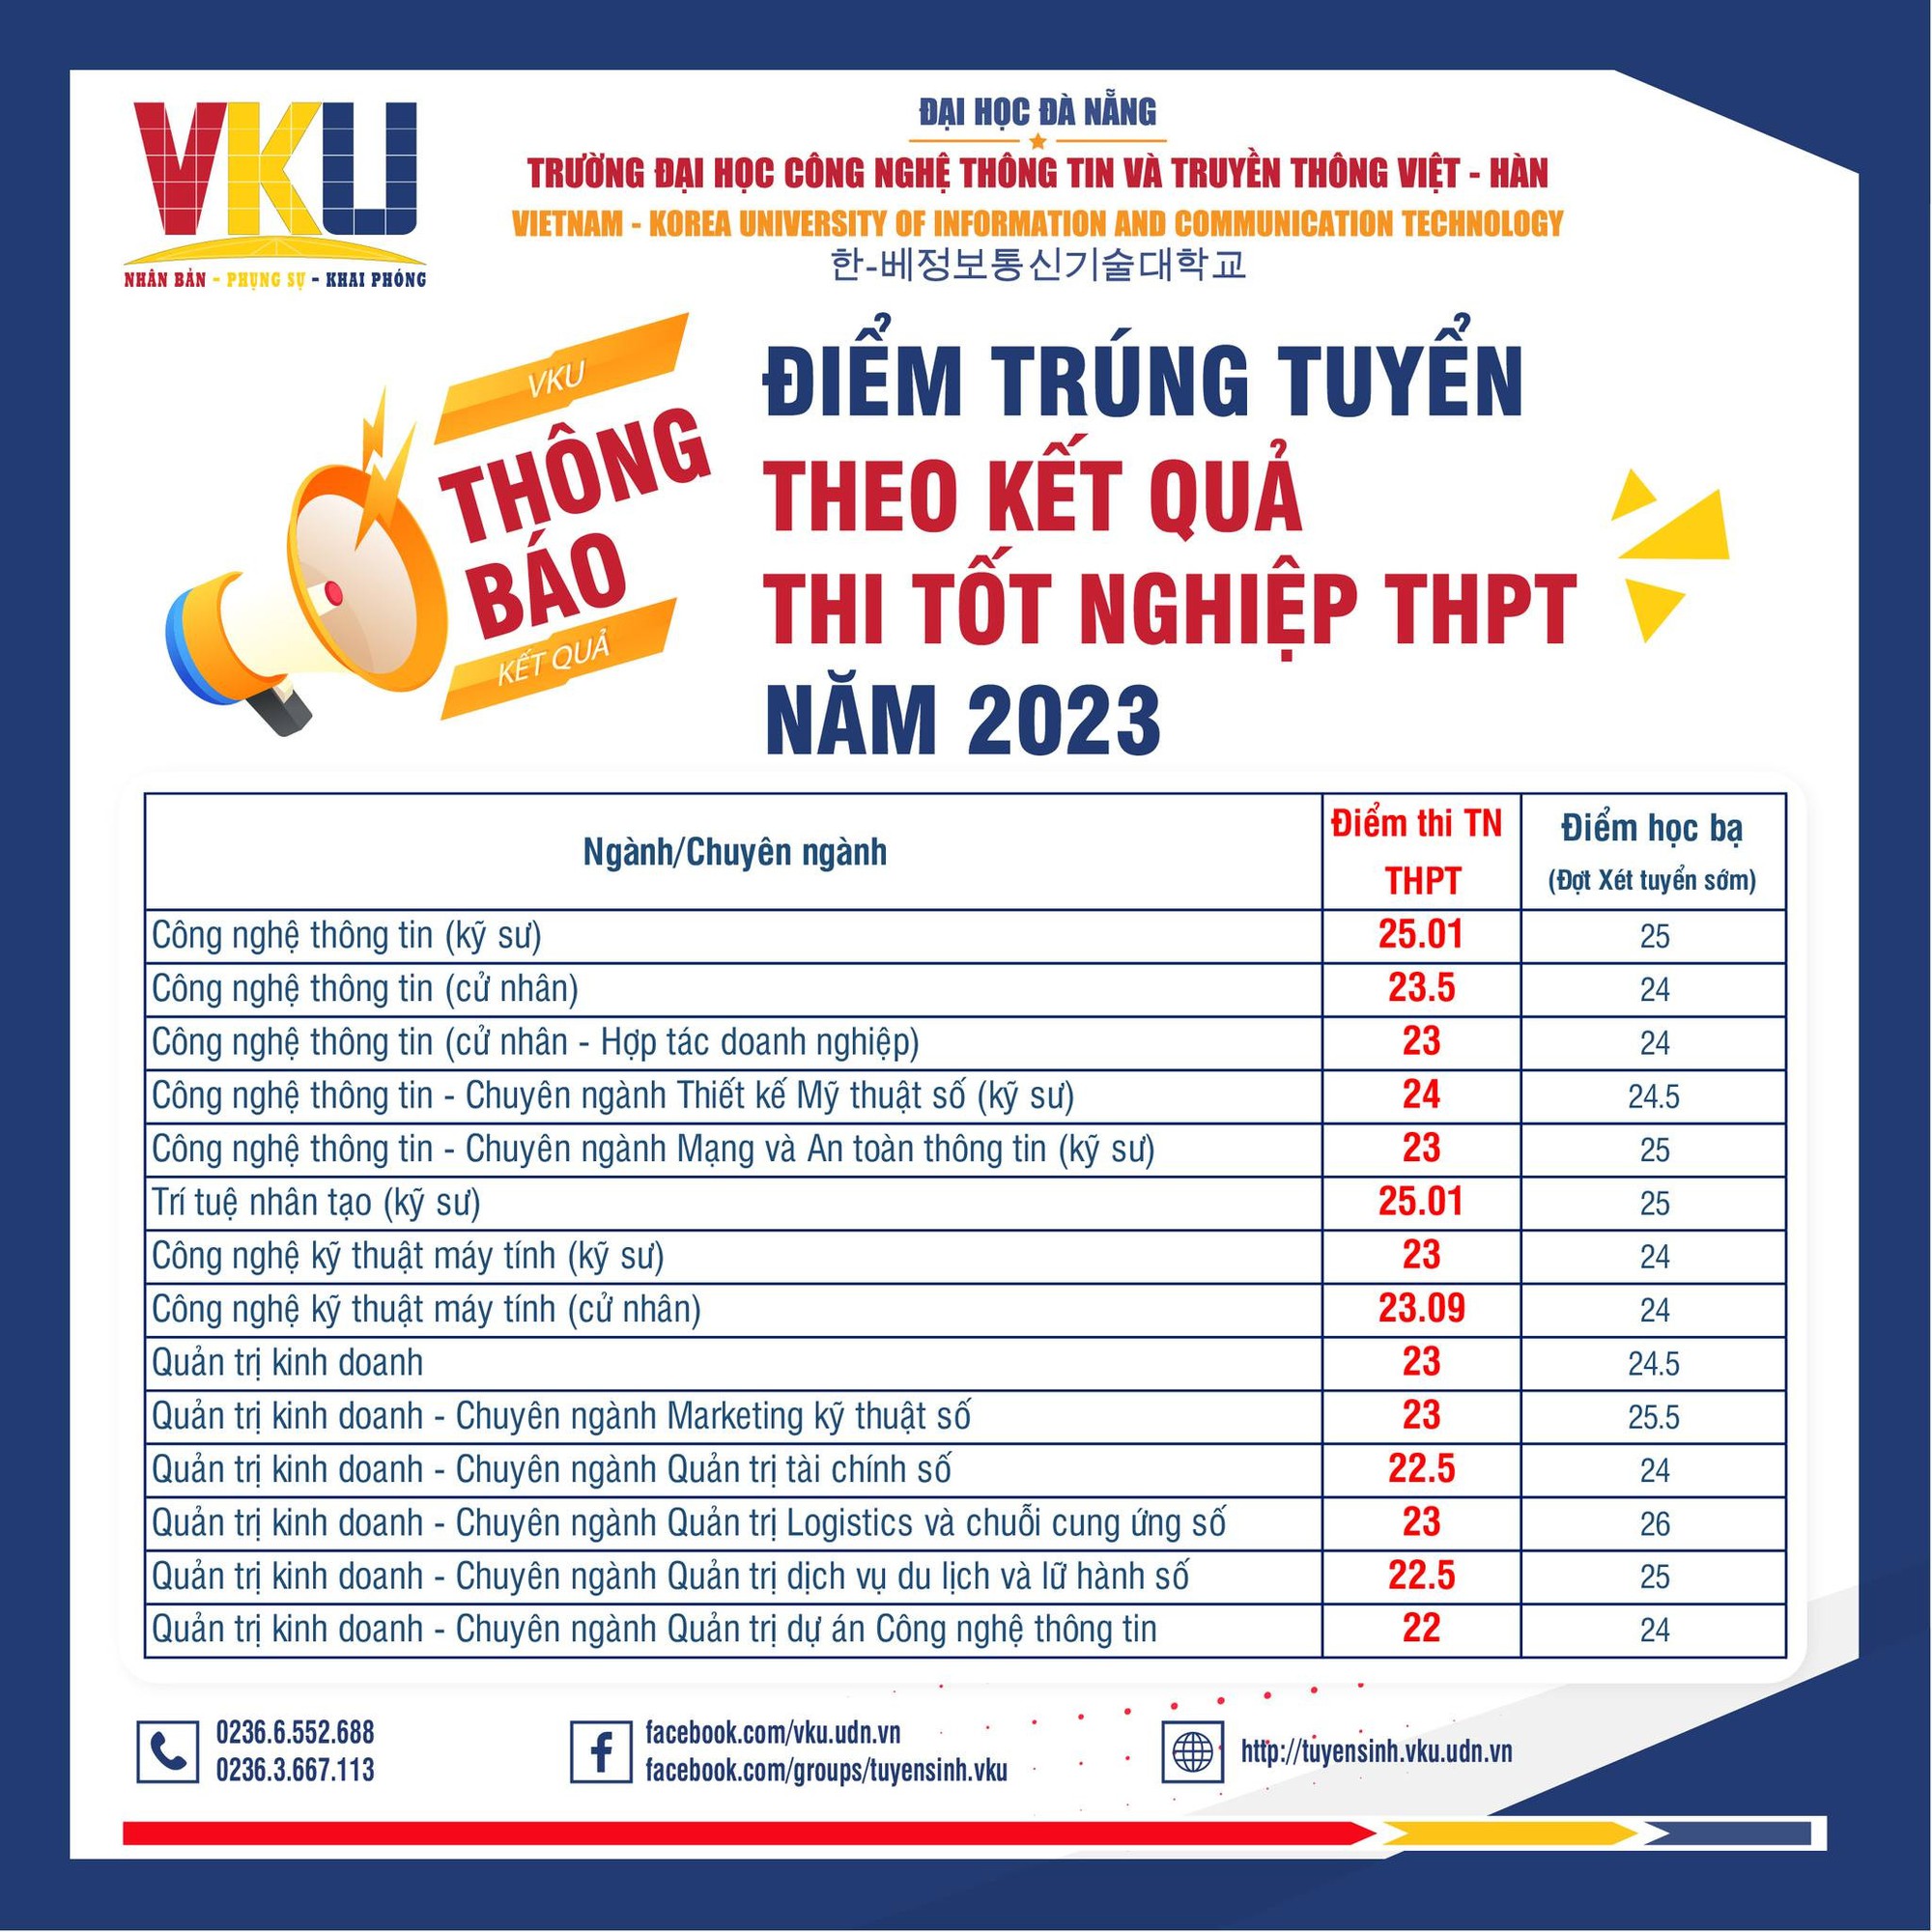 Đại học Đà Nẵng công bố điểm trúng tuyển: Ngành công nghệ thông tin điểm khá cao - Ảnh 6.